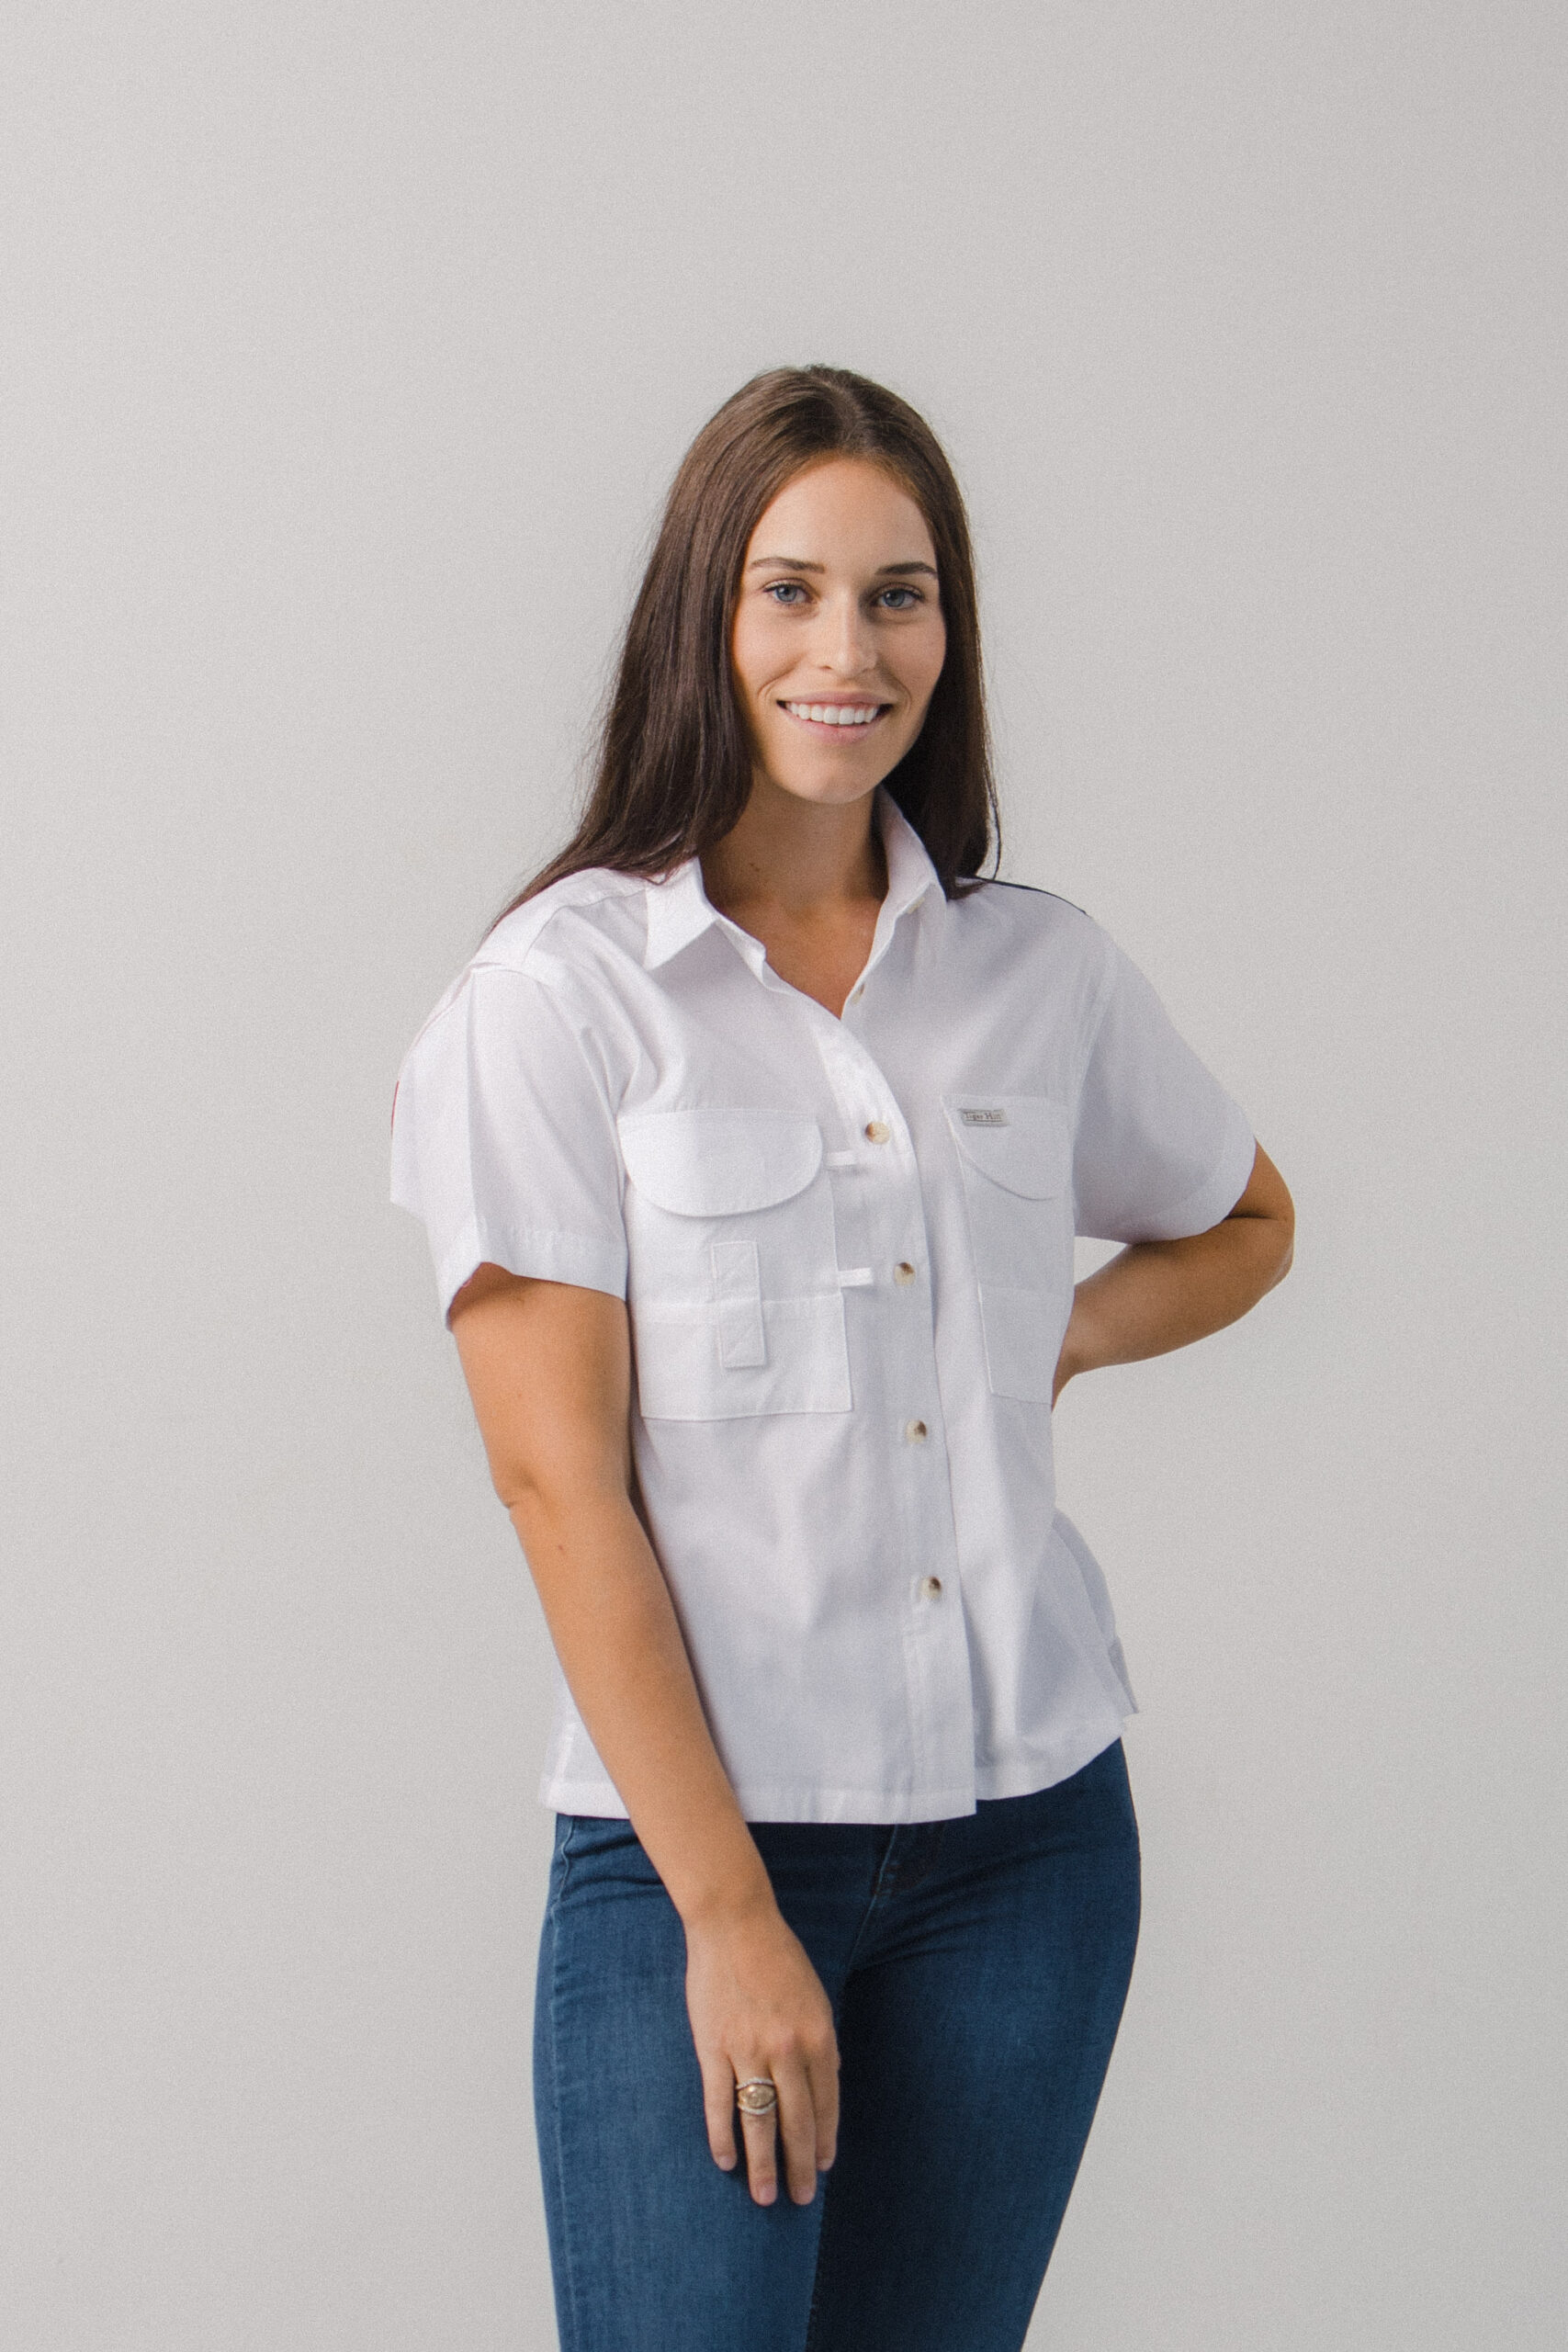 Fishing Shirts - Women's - Texas Shirt - FH Outfitters